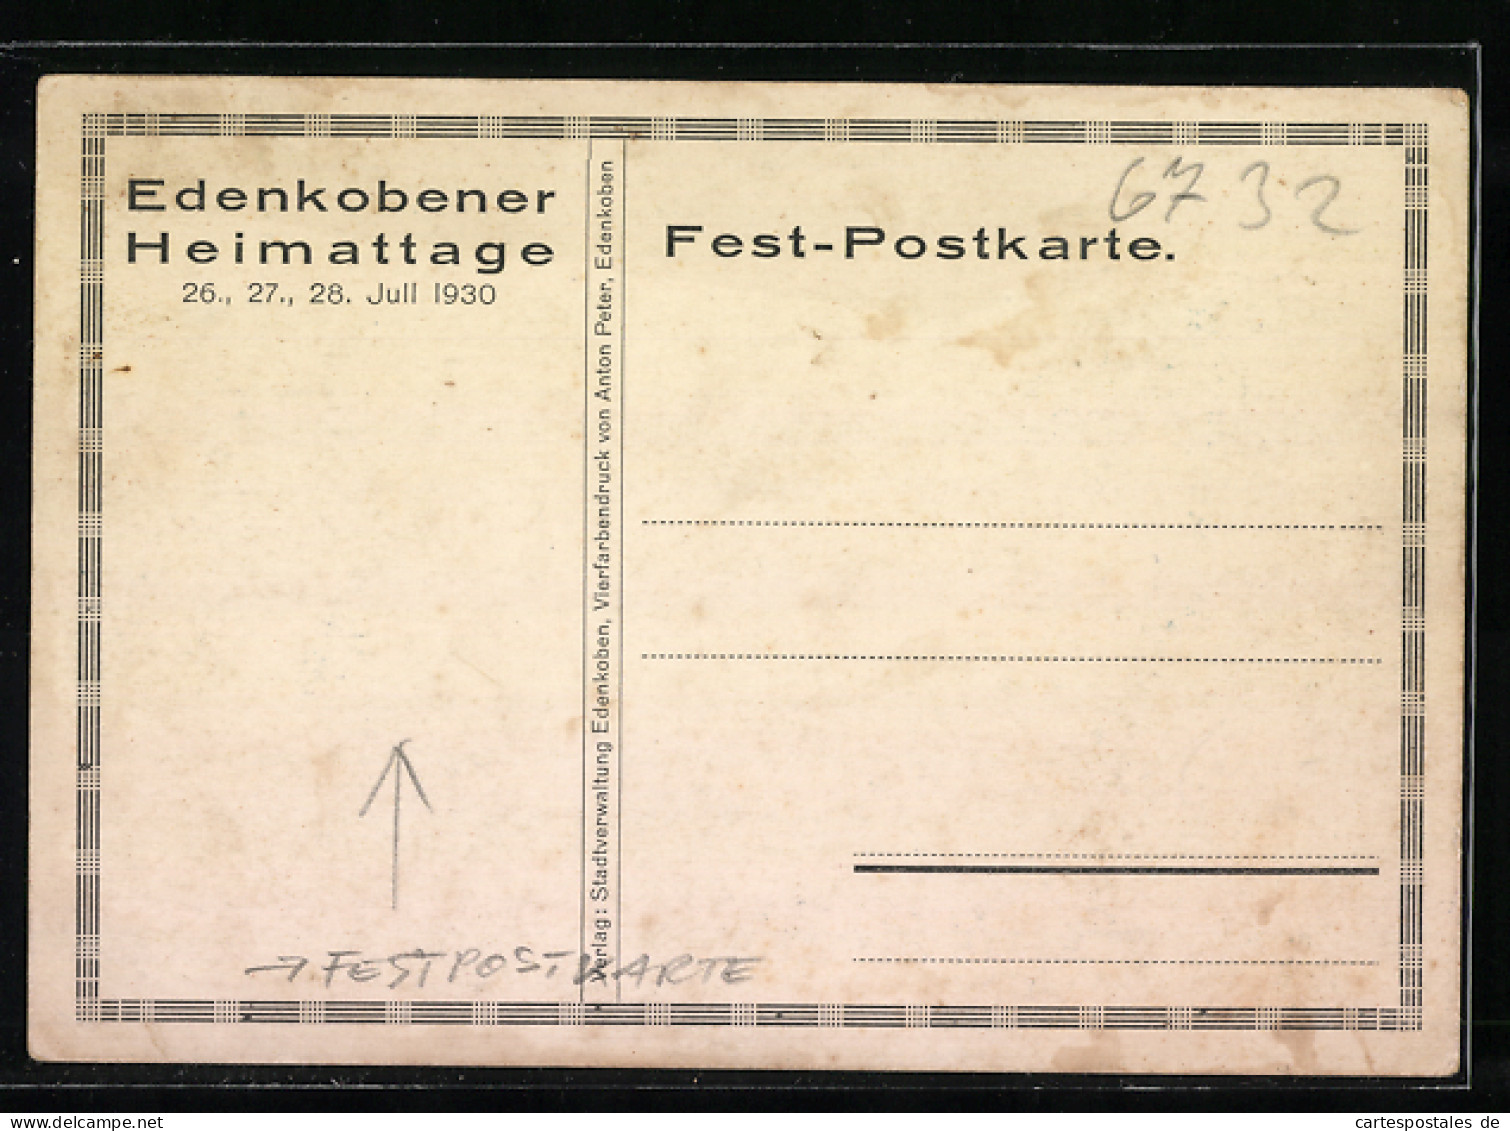 Künstler-AK Edenkoben, Festpostkarte Edenkobener Heimattage 1930  - Edenkoben